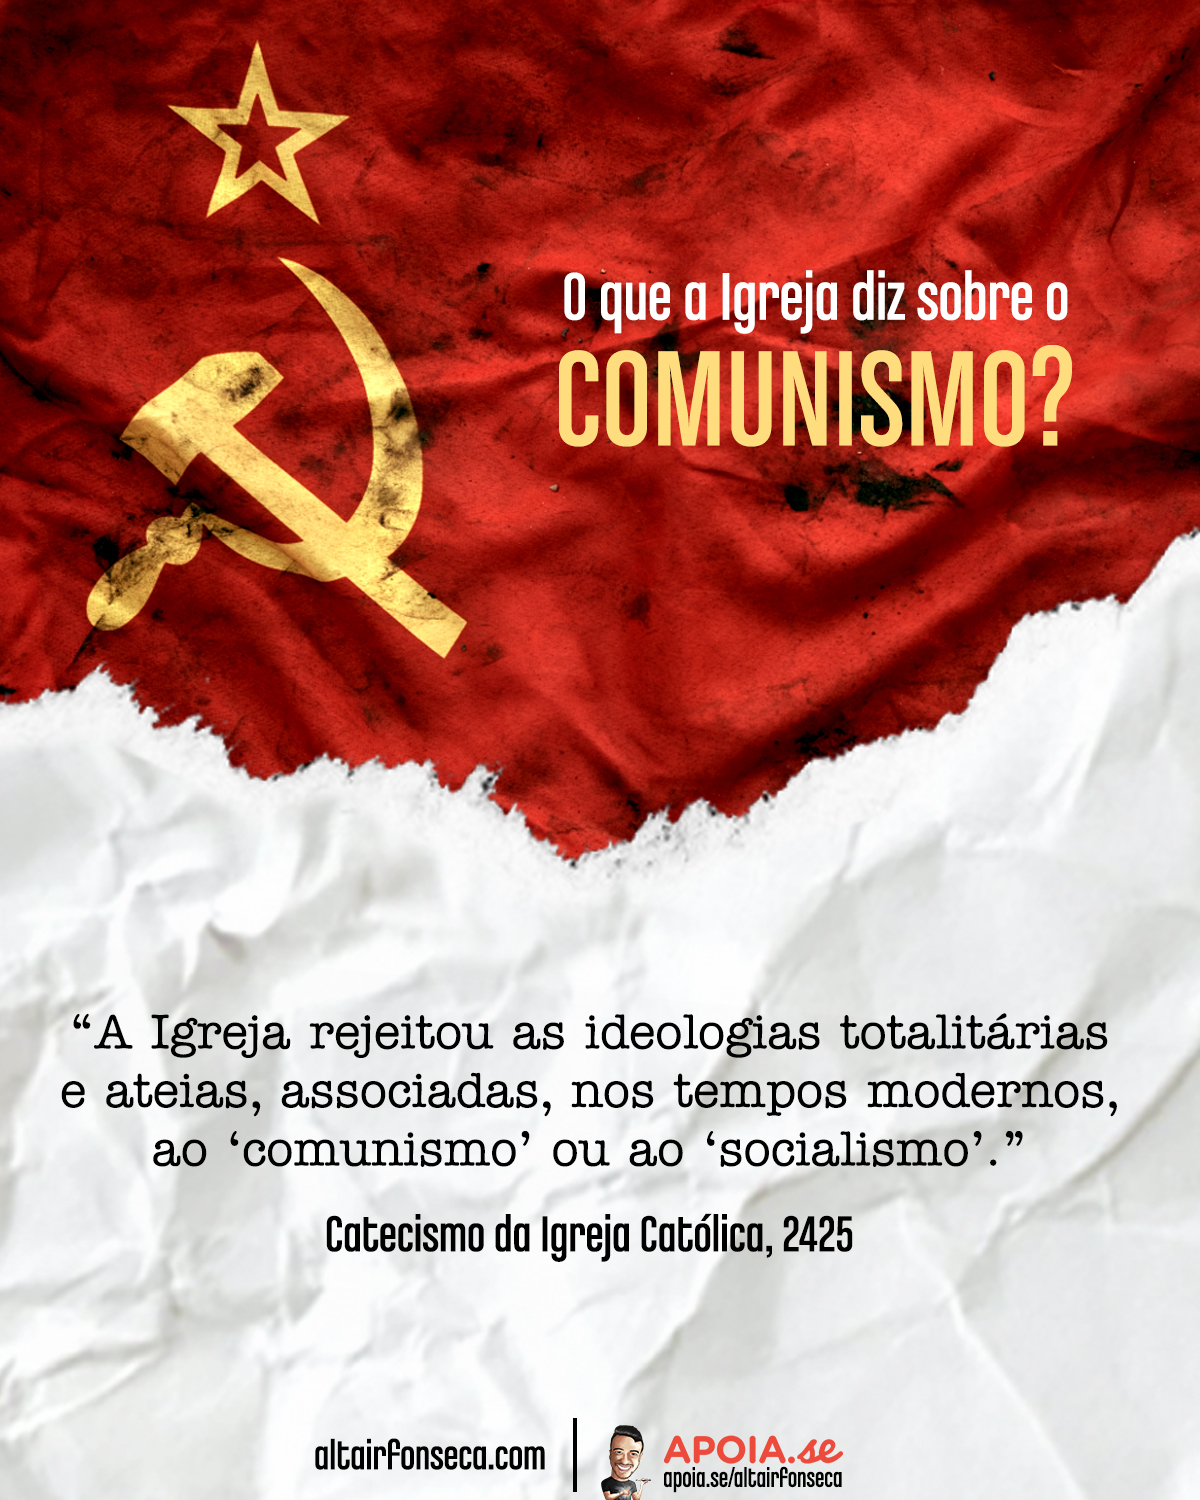 O que a Igreja diz sobre o comunismo e o socialismo